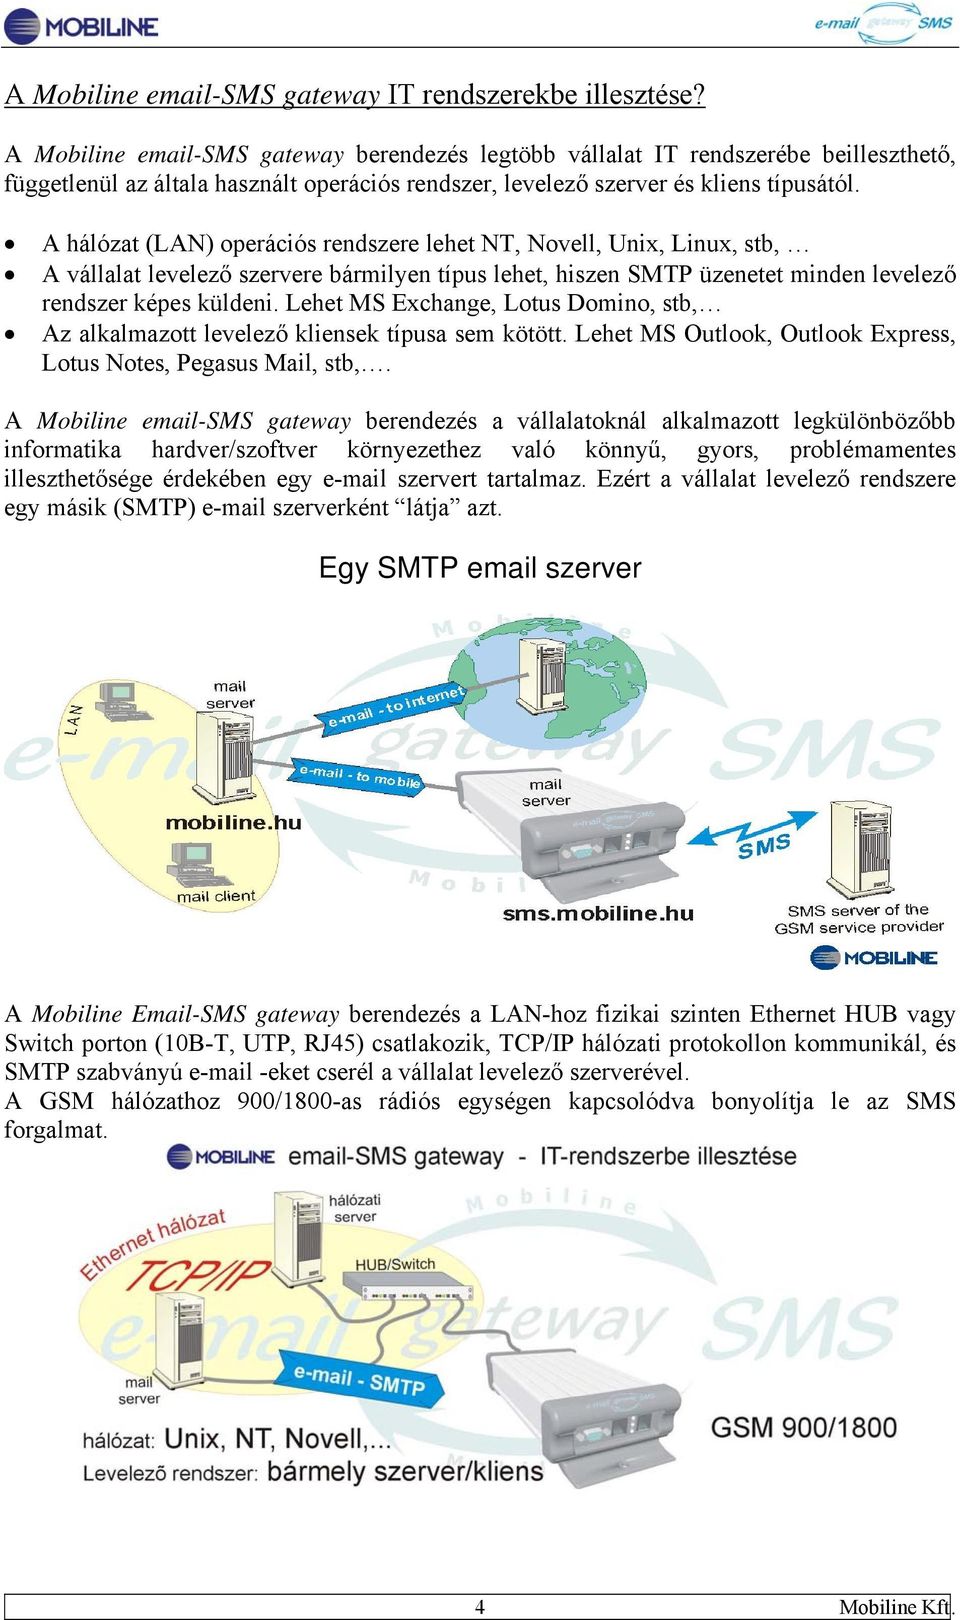 A hálózat (LAN) operációs rendszere lehet NT, Novell, Unix, Linux, stb, A vállalat levelező szervere bármilyen típus lehet, hiszen SMTP üzenetet minden levelező rendszer képes küldeni.